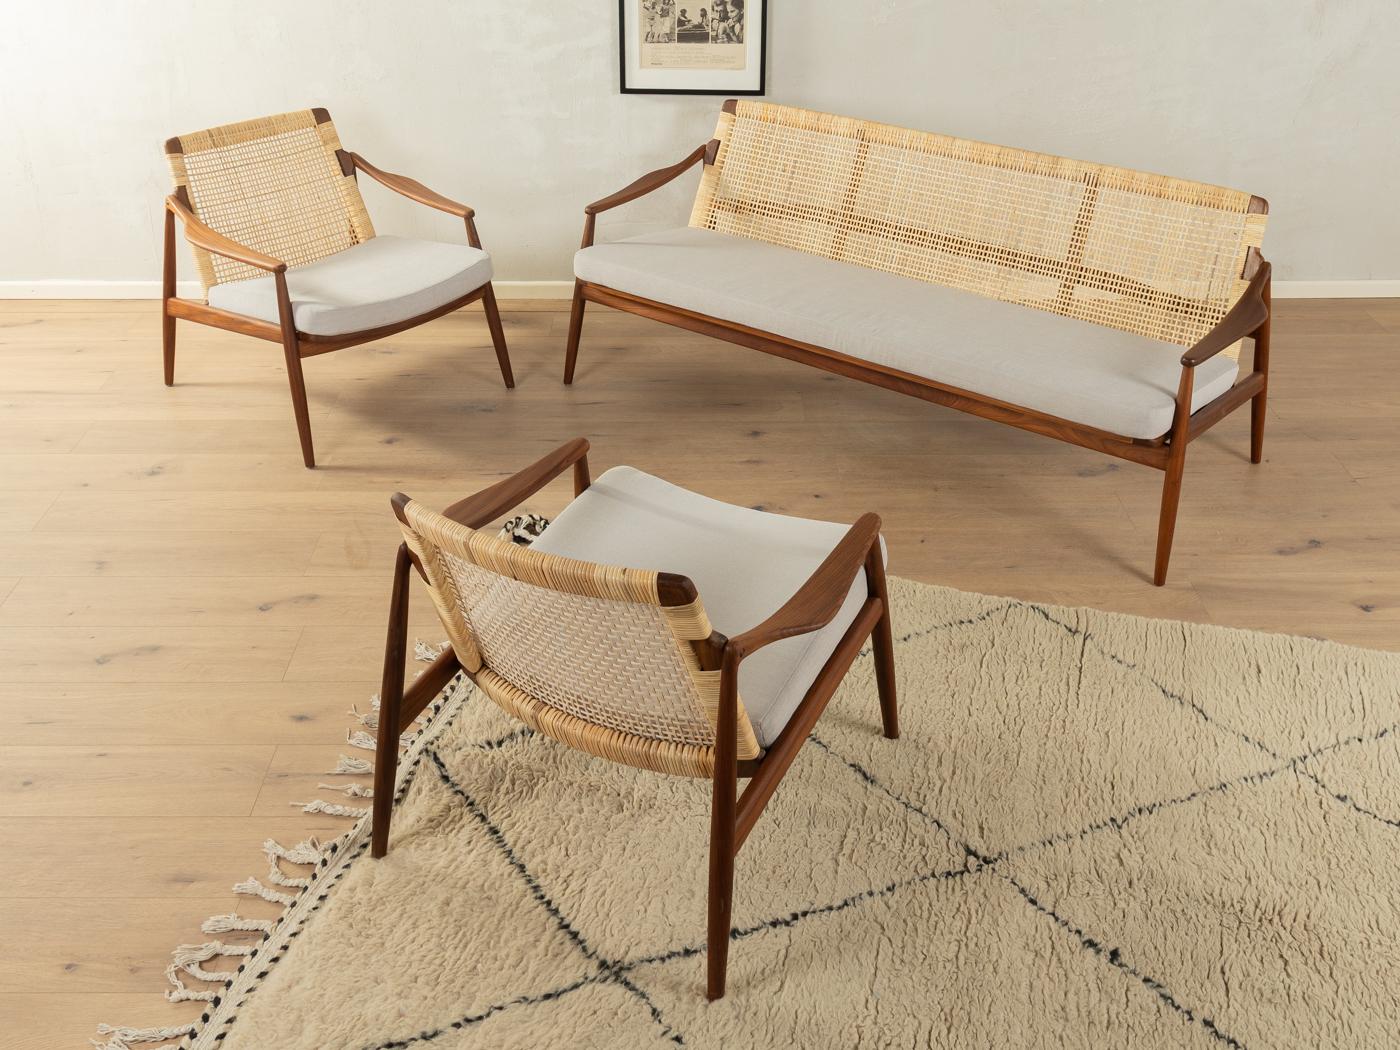 Ensemble de meubles exclusifs comprenant un canapé et deux fauteuils du Type 400 des années 1950 par Hartmut Lohmeyer pour Wilkhahn. Structure en teck de haute qualité avec un nouveau travail contemporain de l'osier. L'ensemble des meubles a été